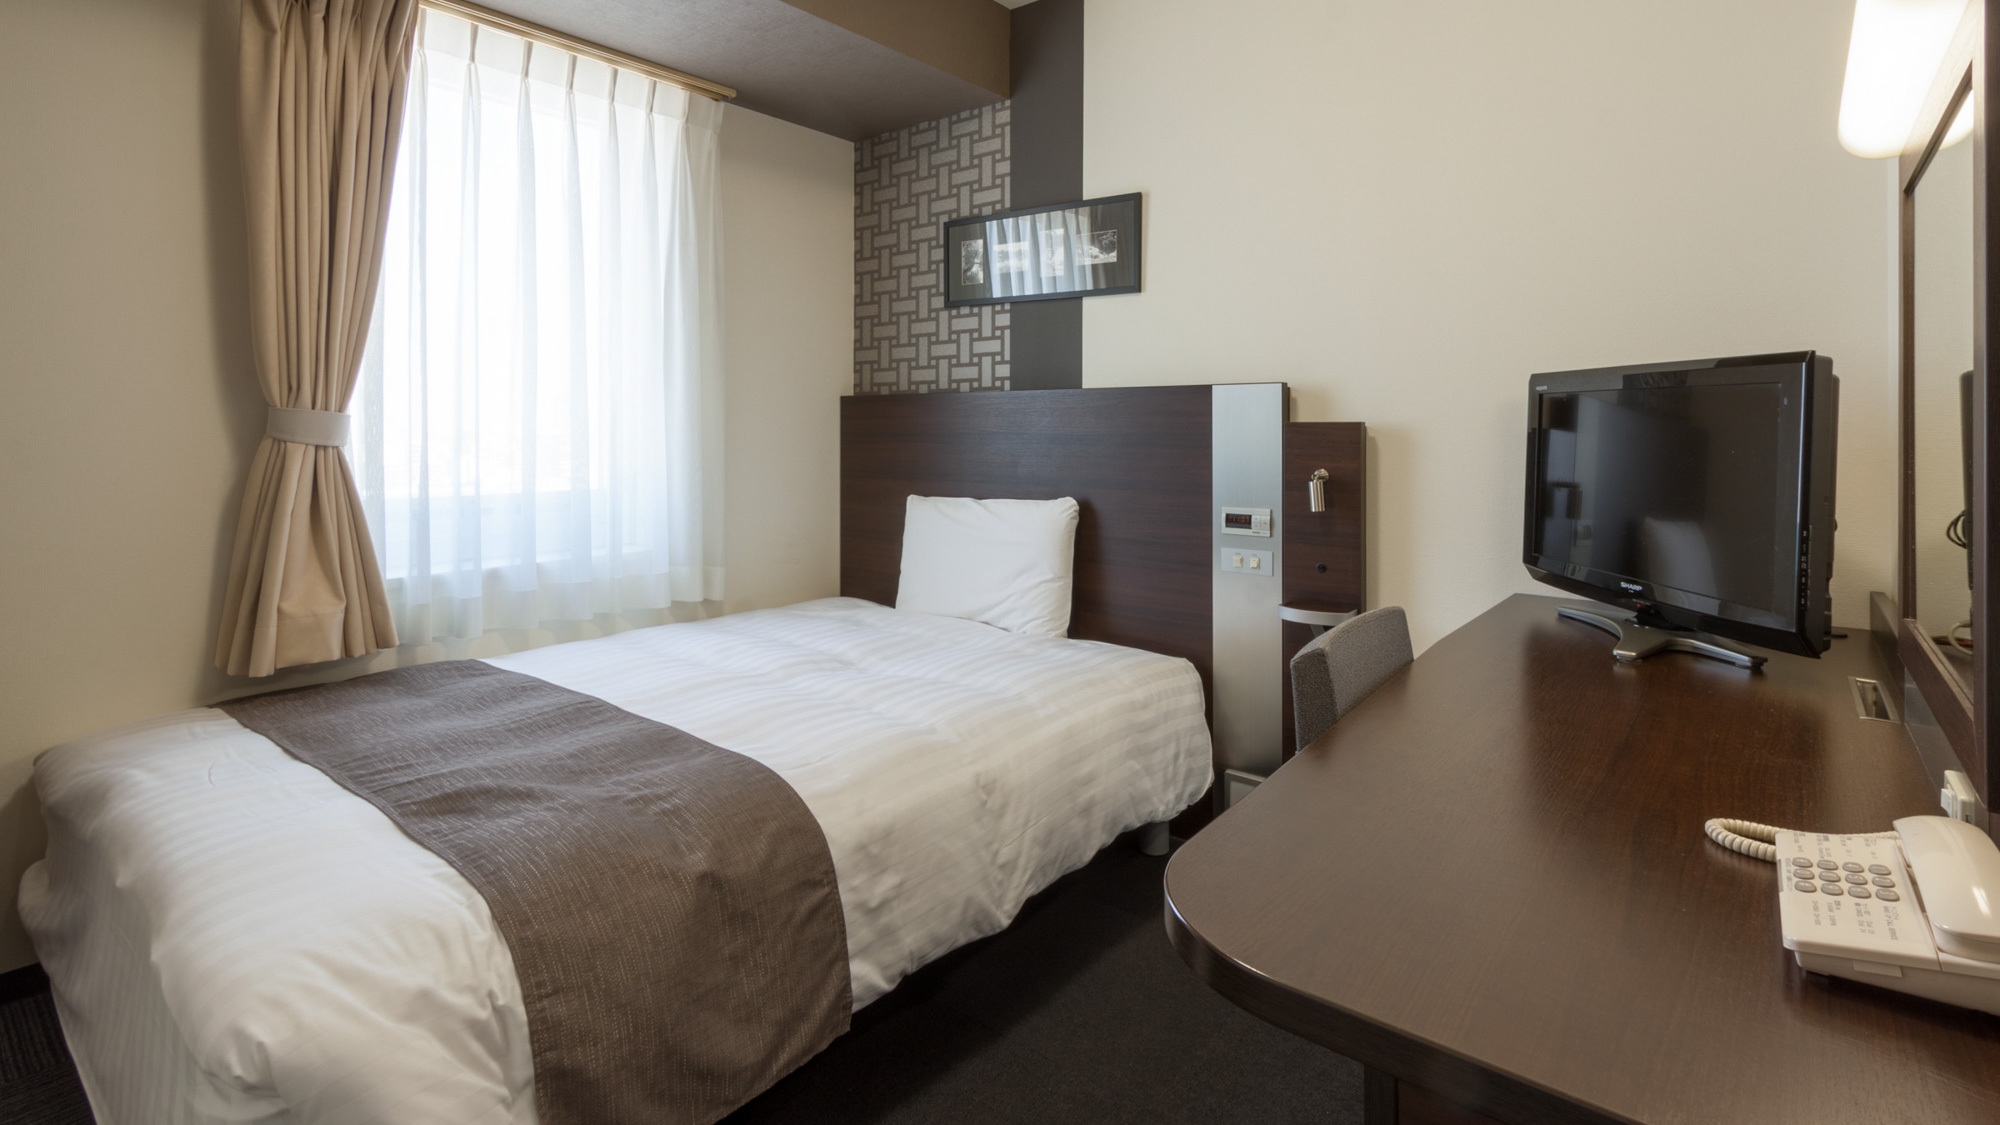 コンフォートホテル東京清澄白河で宿泊した部屋は「ダブルエコノミー」タイプ